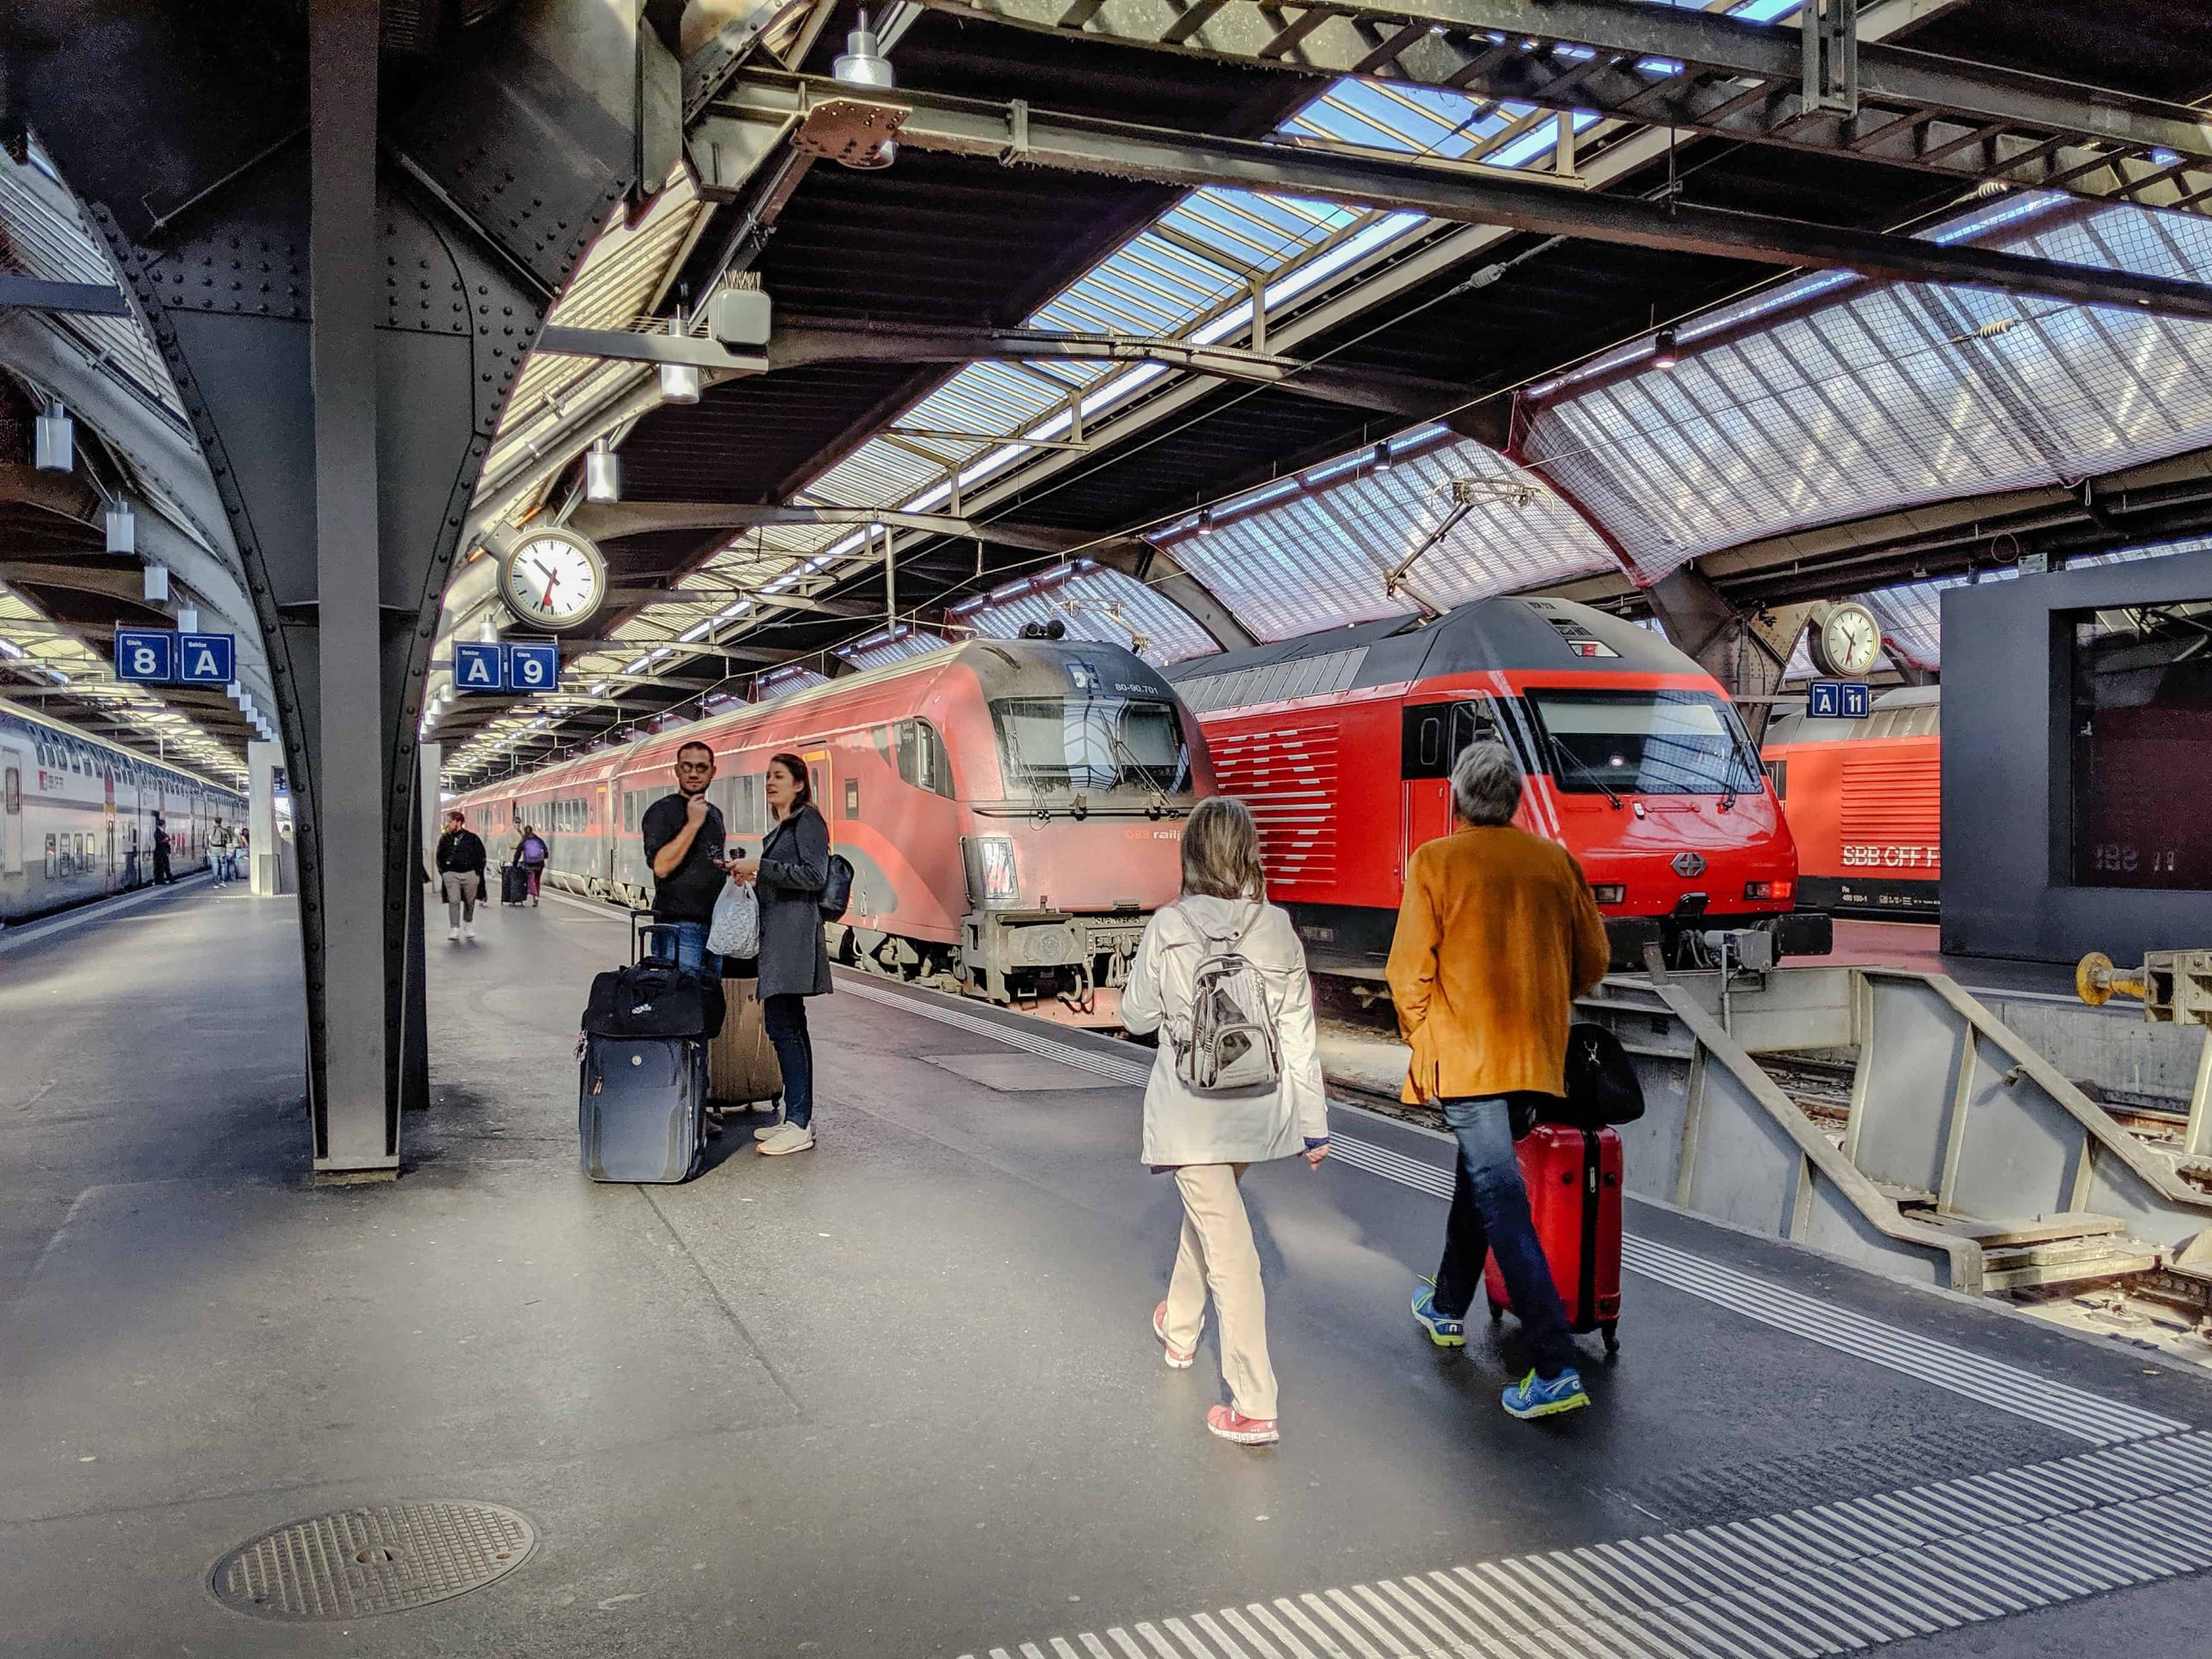 حمل و نقل عمومی در زوریخ؛ سوئیس